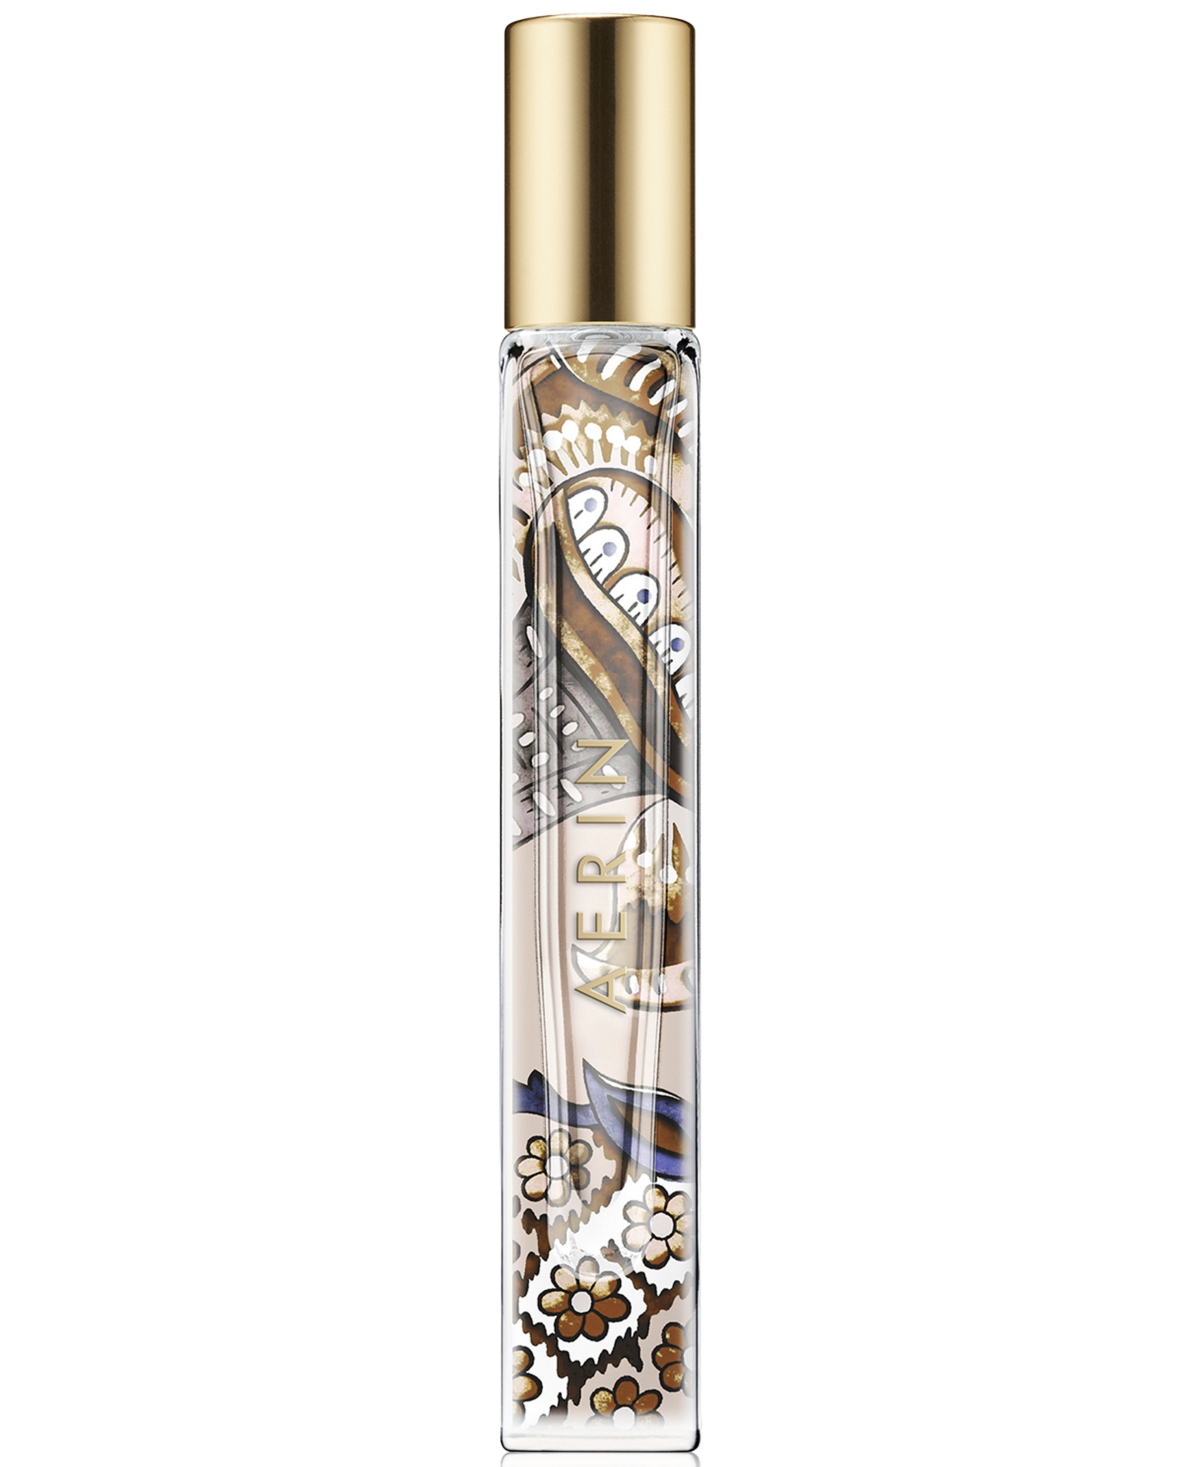 Amber Musk Eau de Parfum Travel Spray, 0.24 oz.